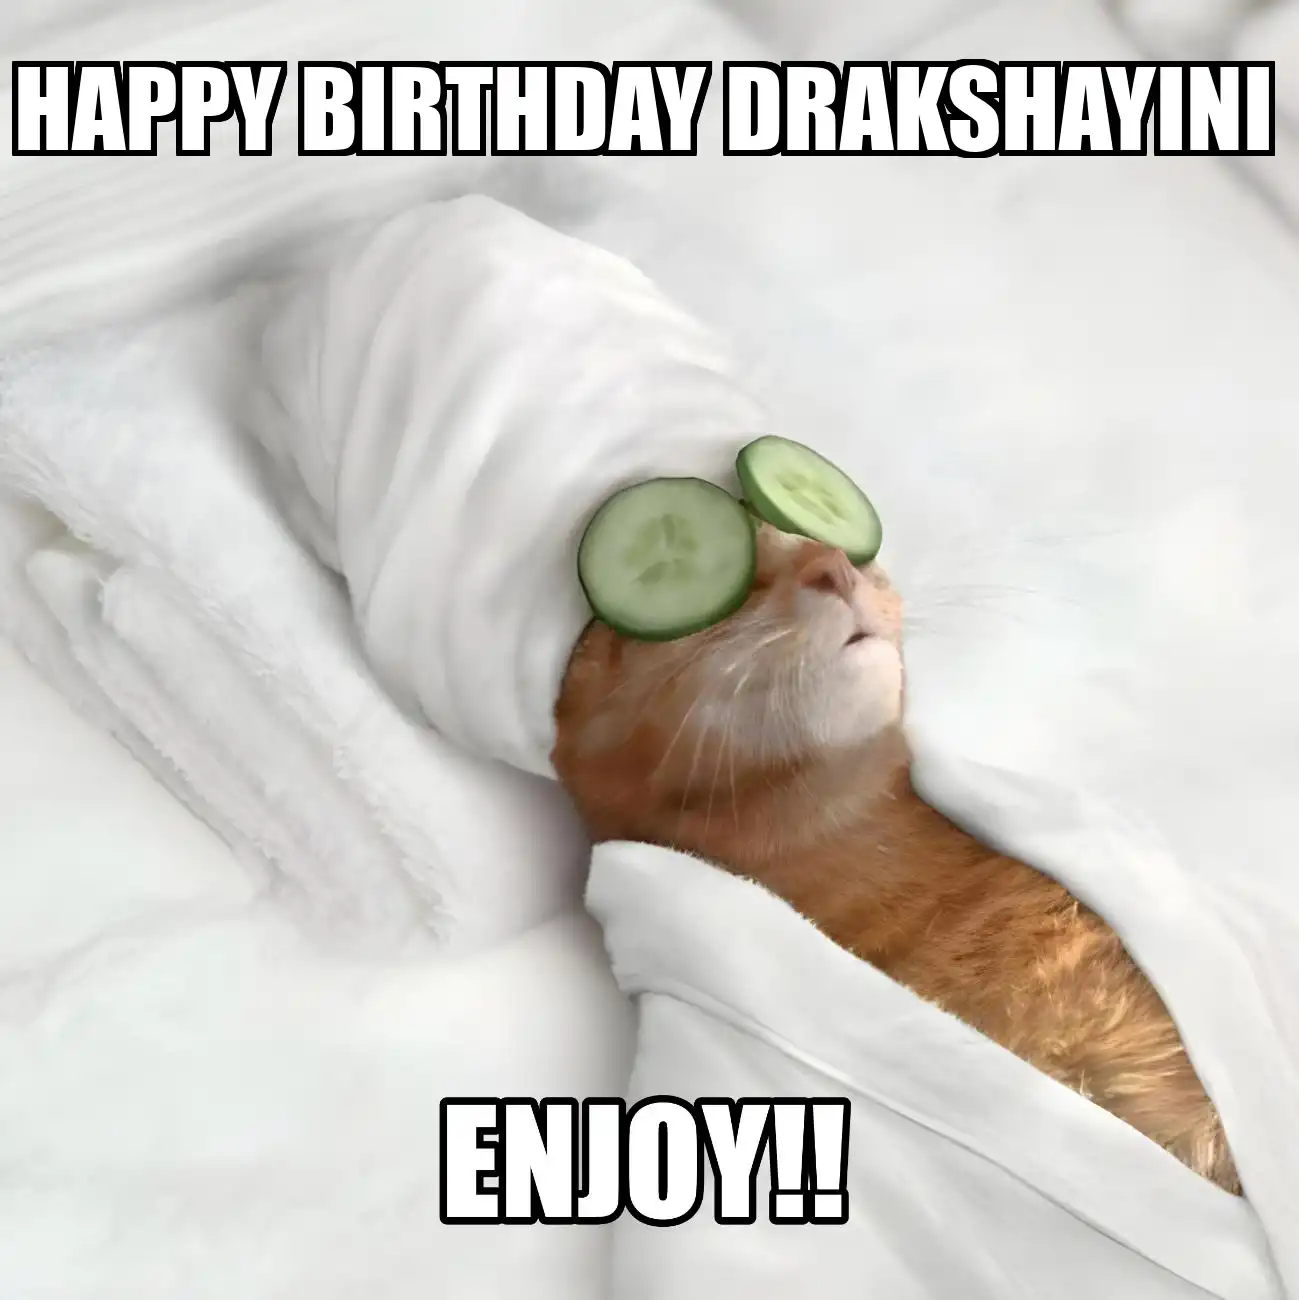 Happy Birthday Drakshayini Enjoy Cat Meme